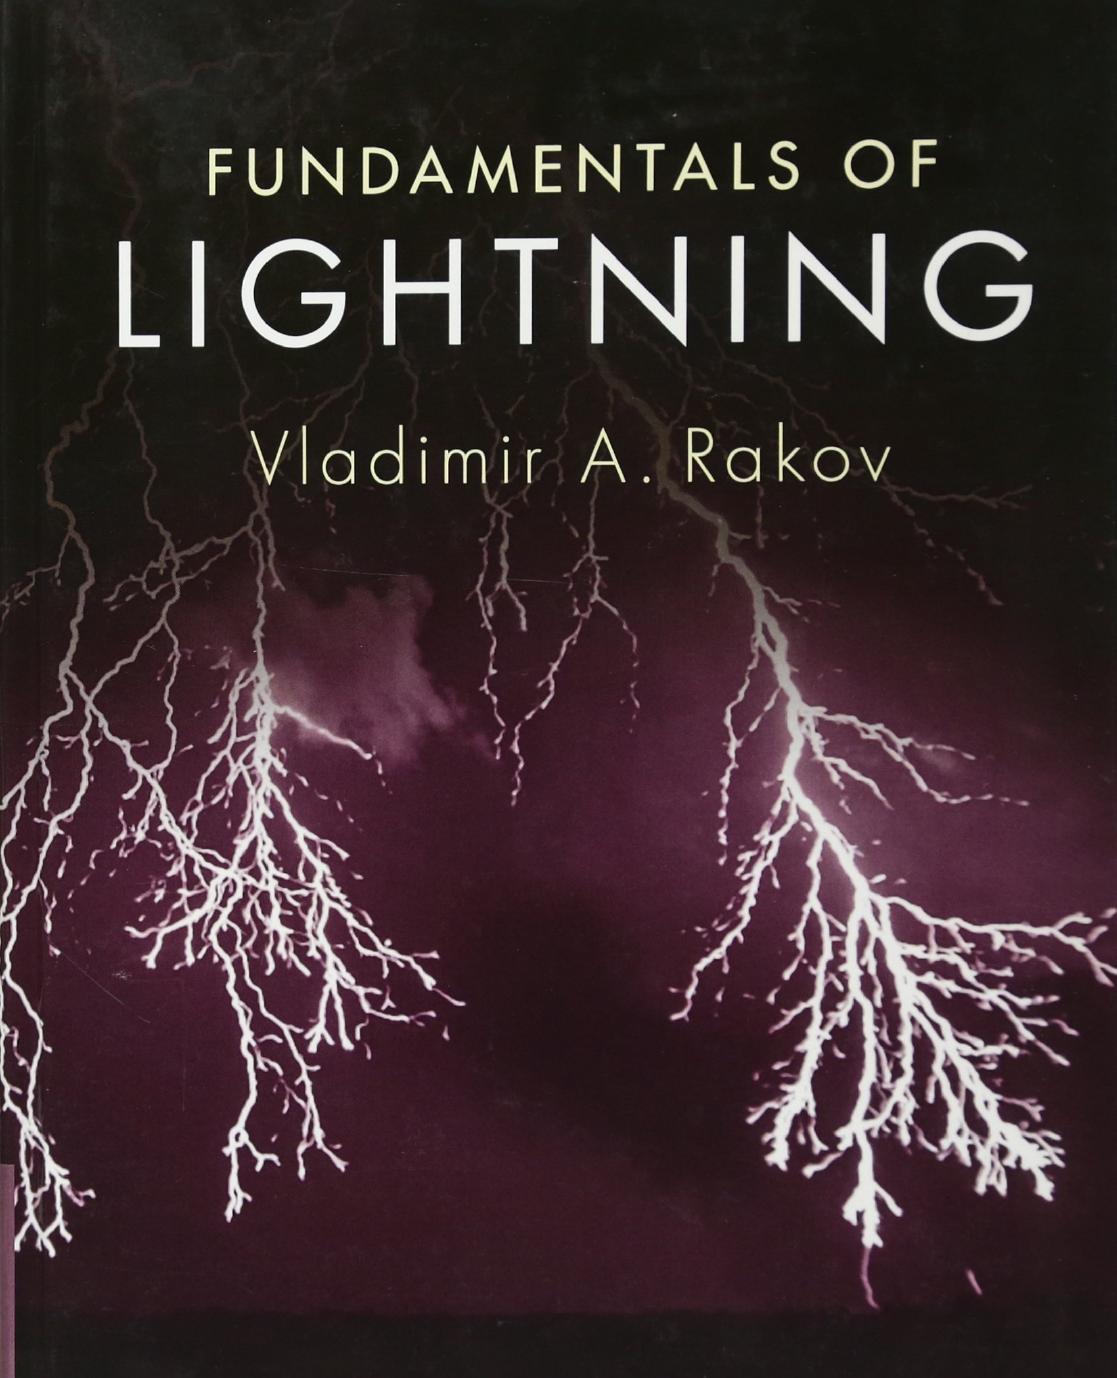 (eBook PDF)Fundamentals of Lightning by Vladimir A. Rakov